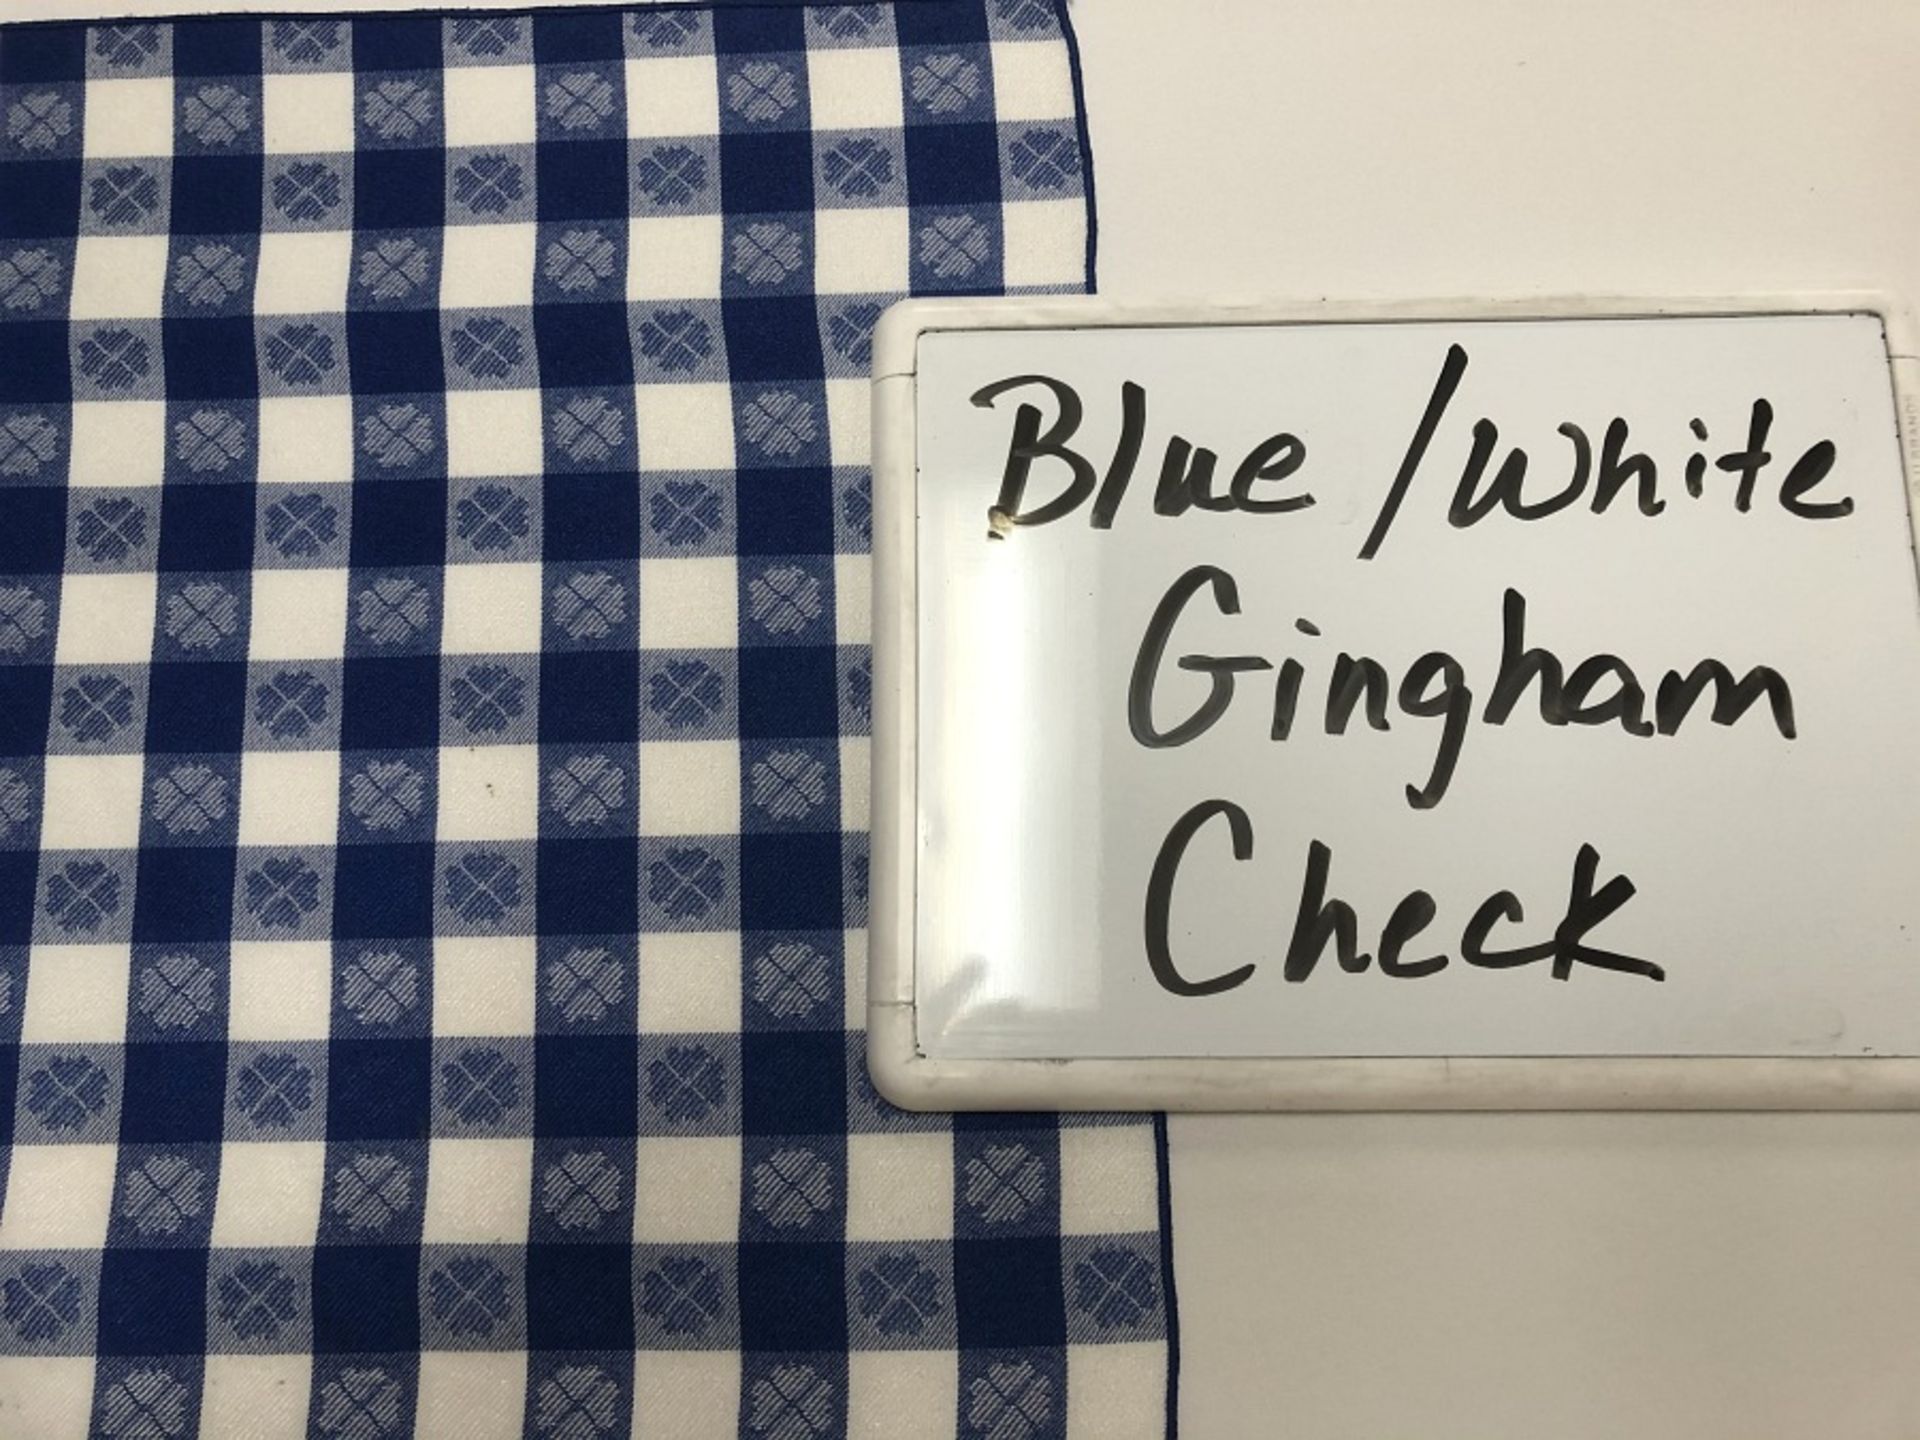 Blue/White Gingham Check 108